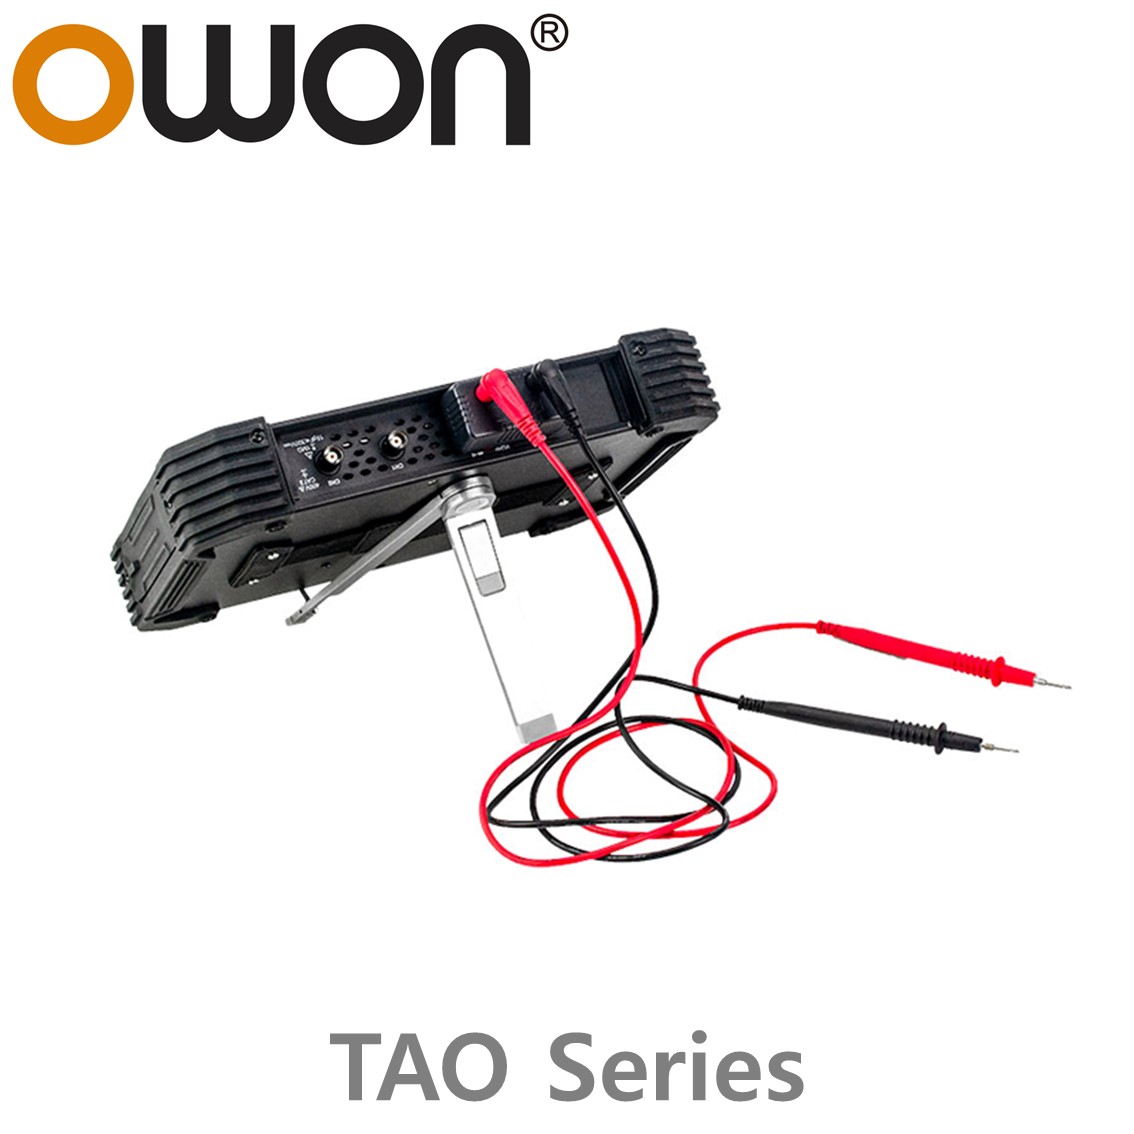 [ OWON ] TAO시리즈 태블릿 오실로스코프 (2~4채널 / 70~120MHz / 1GS/s / 8~14Bit)